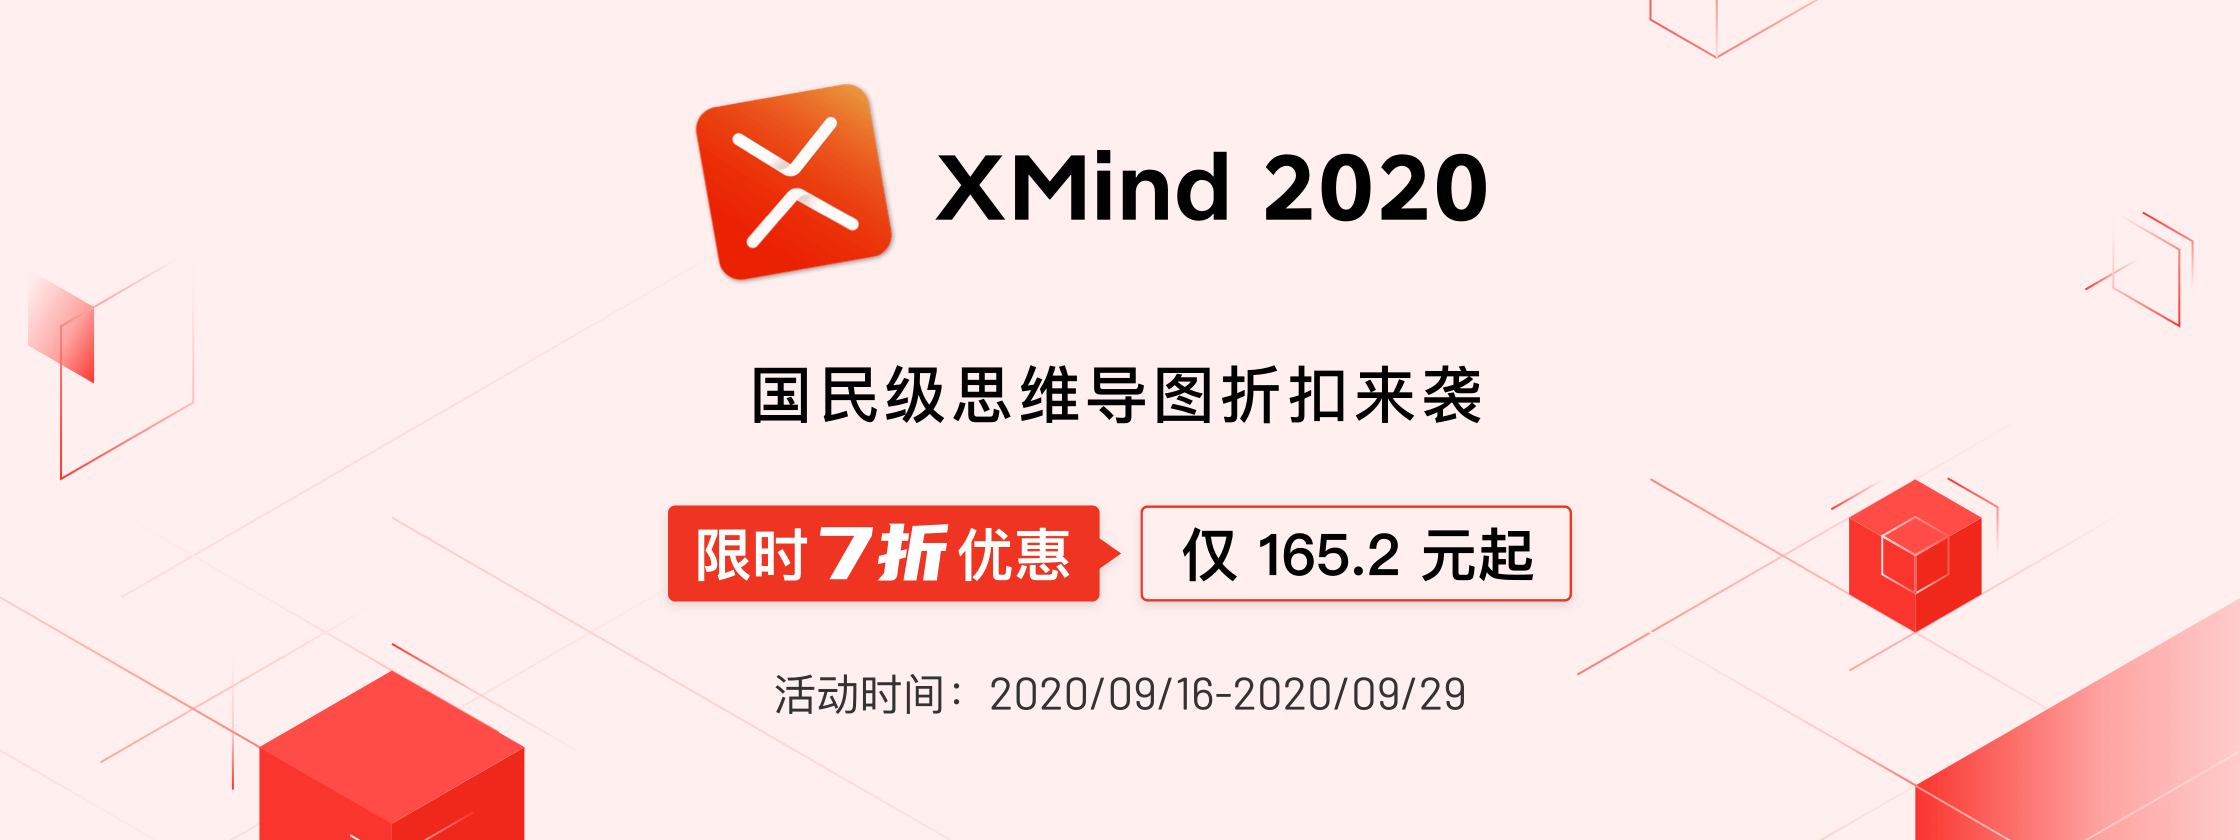 活动 - XMind 2020 限时 7 折